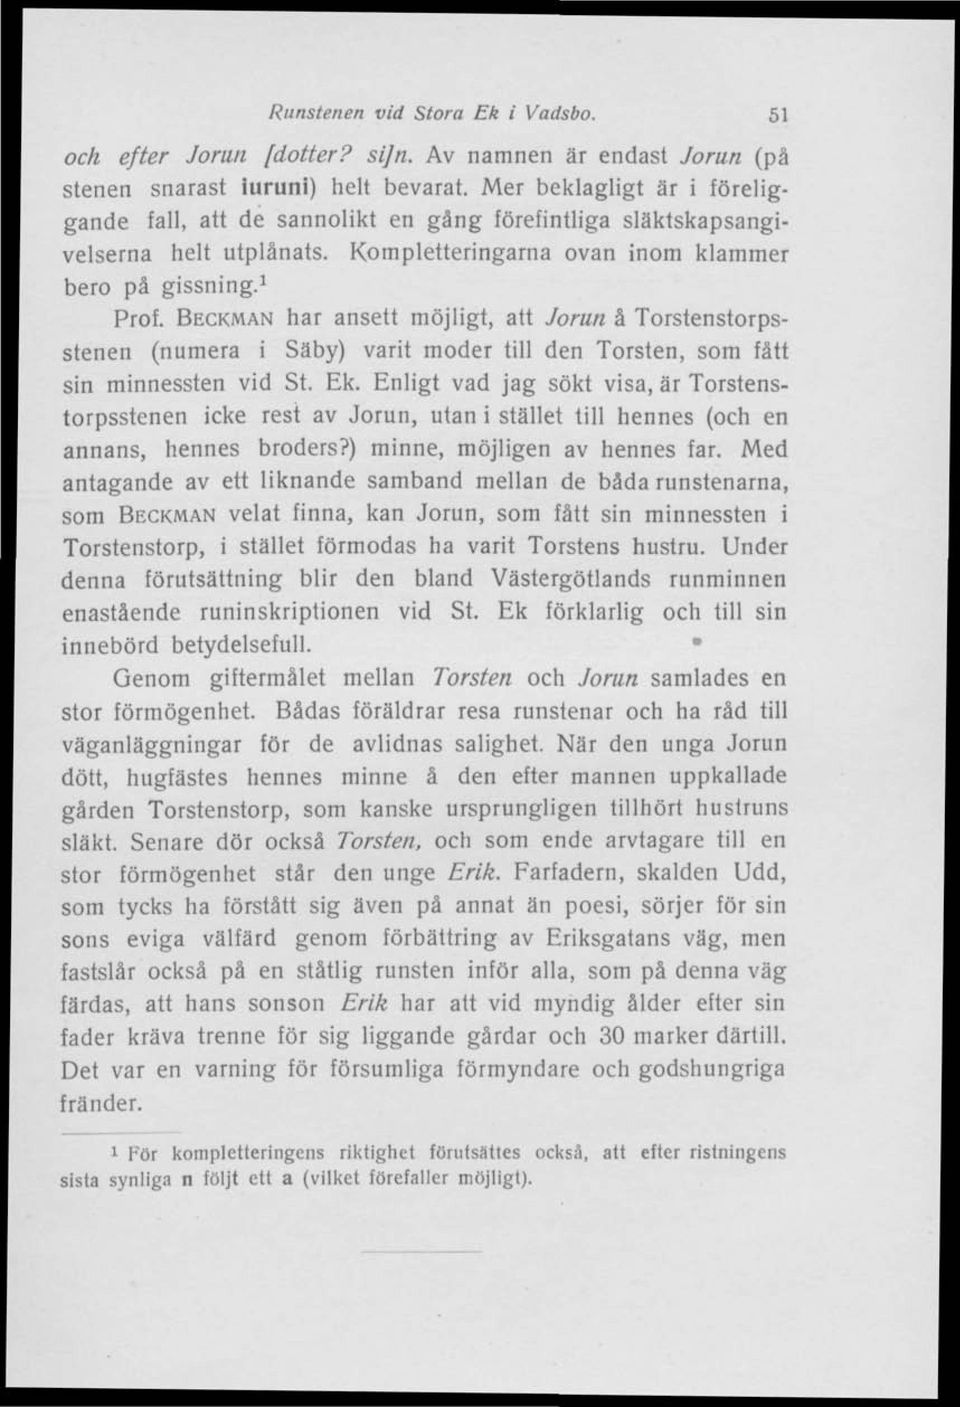 BECKMAN har ansett möjligt, att Jorun å Torstenstorpsstenen (numera i Säby) varit moder till den Torsten, som fått sin minnessten vid St. Ek.